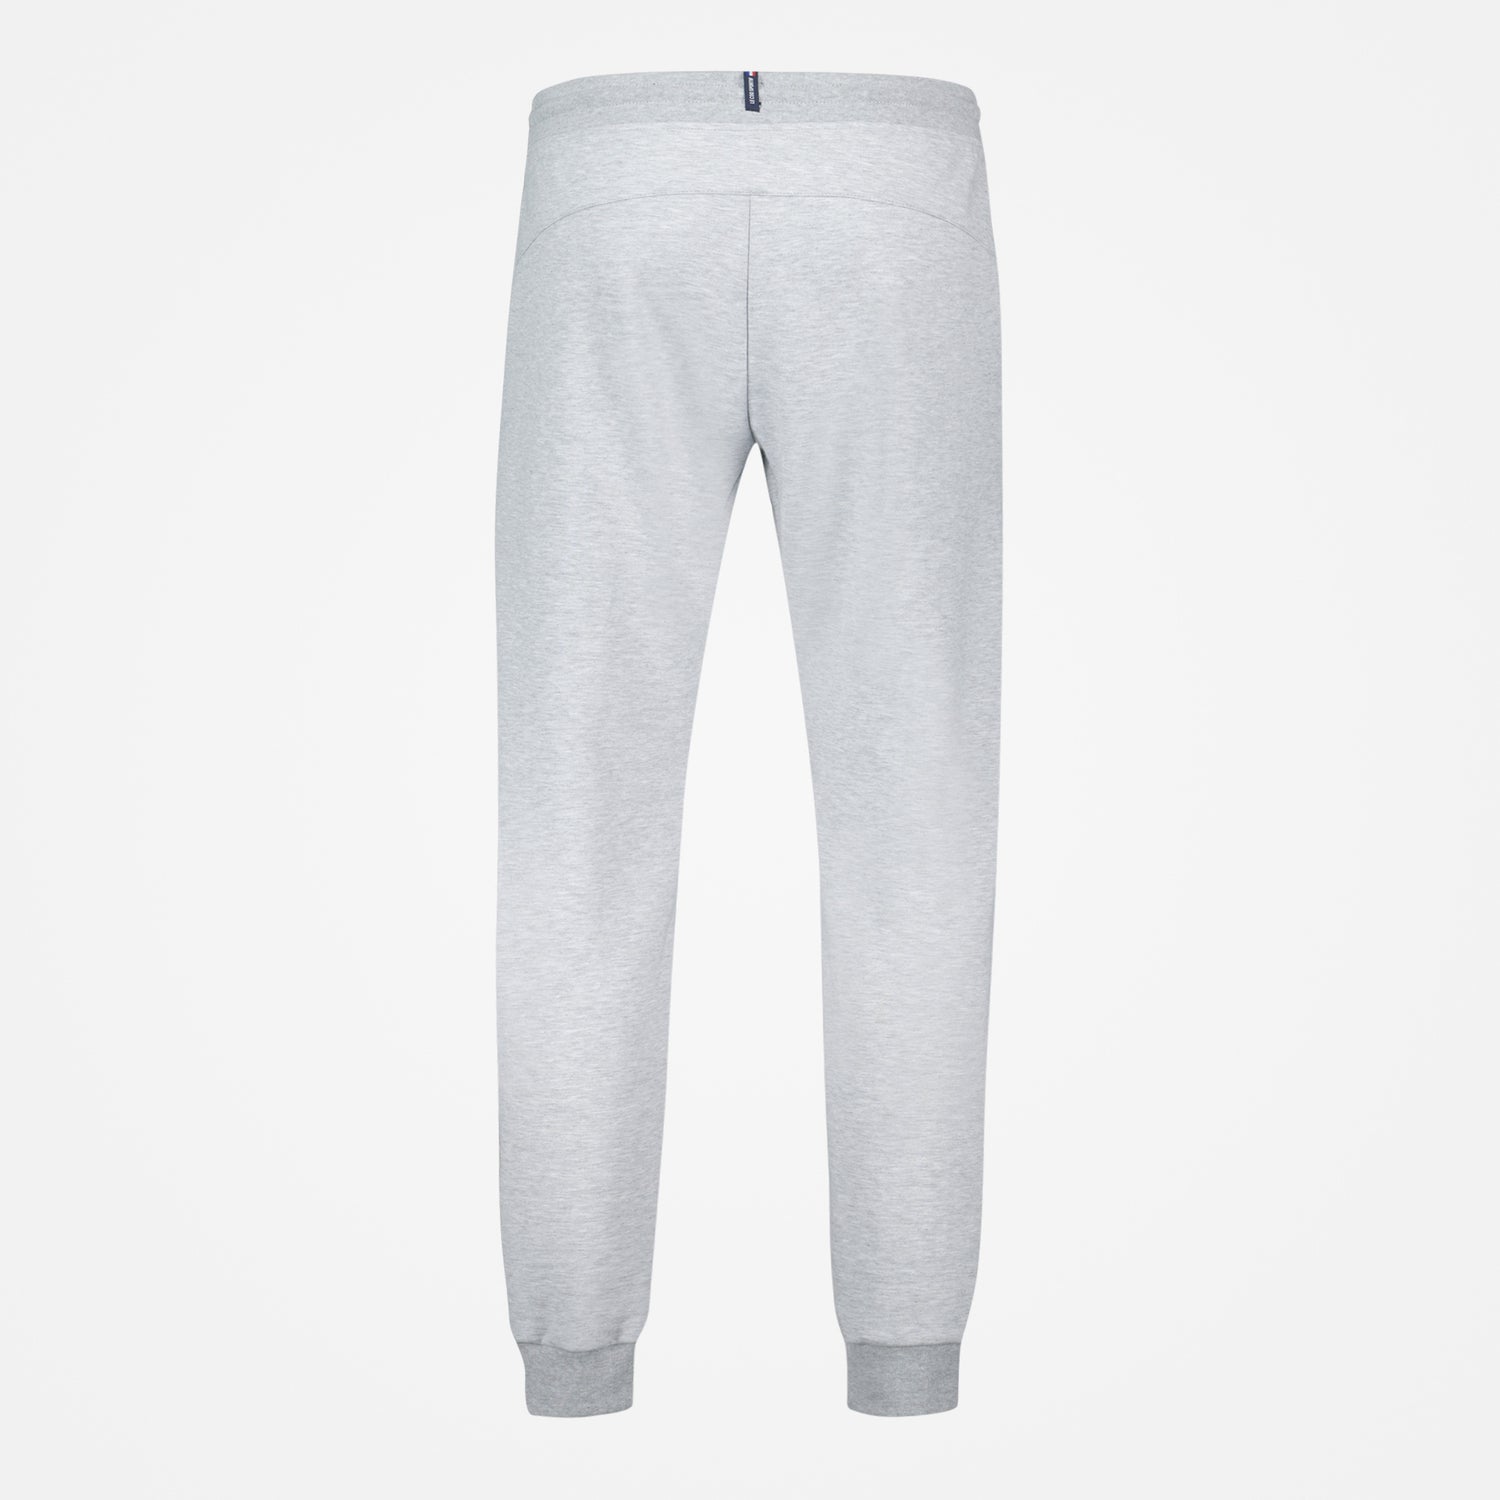 2310570-ESS Pant Regular N°4 M gris chiné clair  | Pantalón Regular Hombre